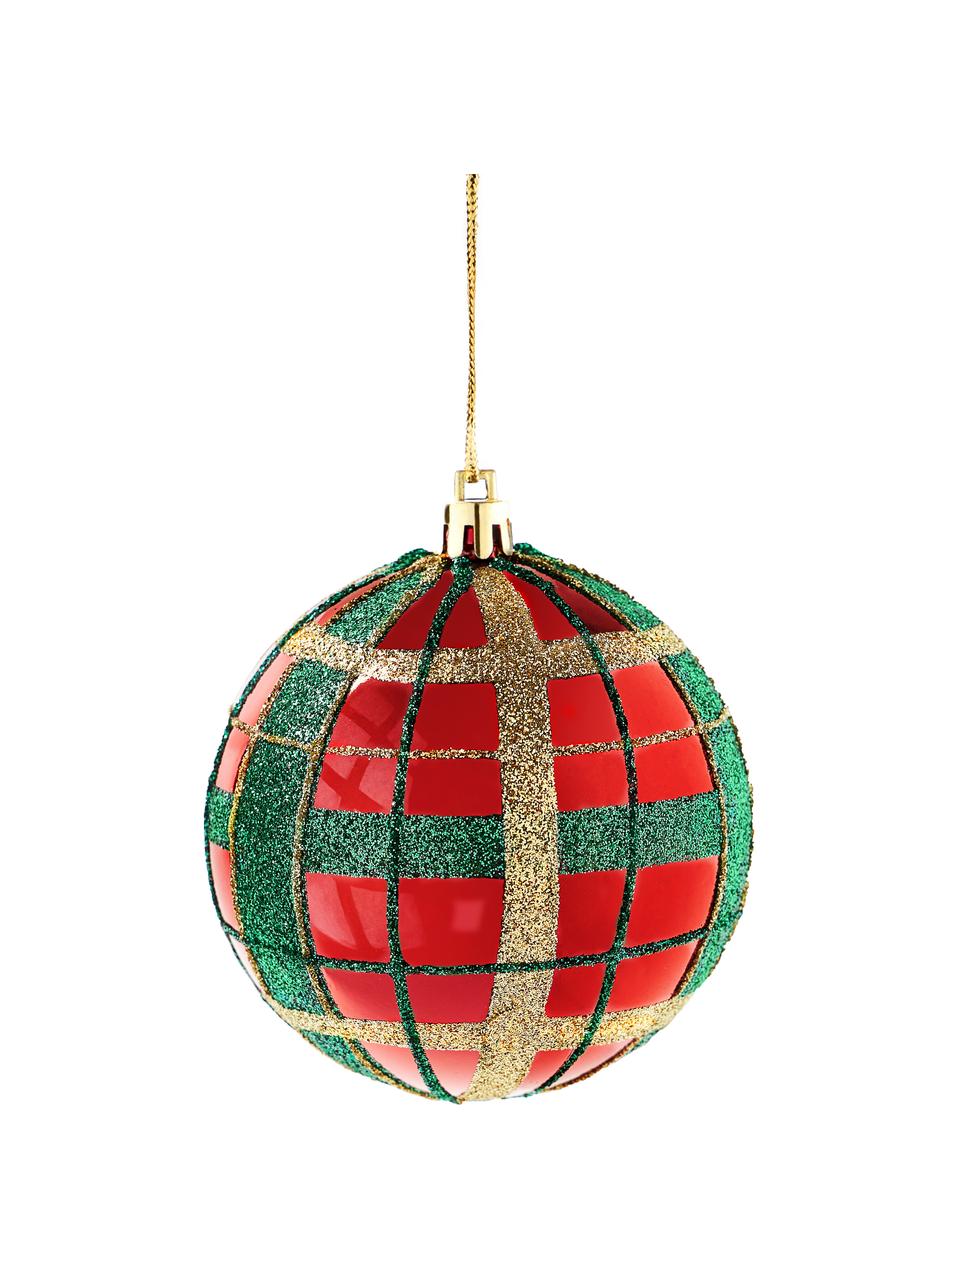 Bruchfeste Weihnachtskugeln Karo, 12 Stück, Kunststoff, Rot, Grün, Goldfarben, Ø 8 cm